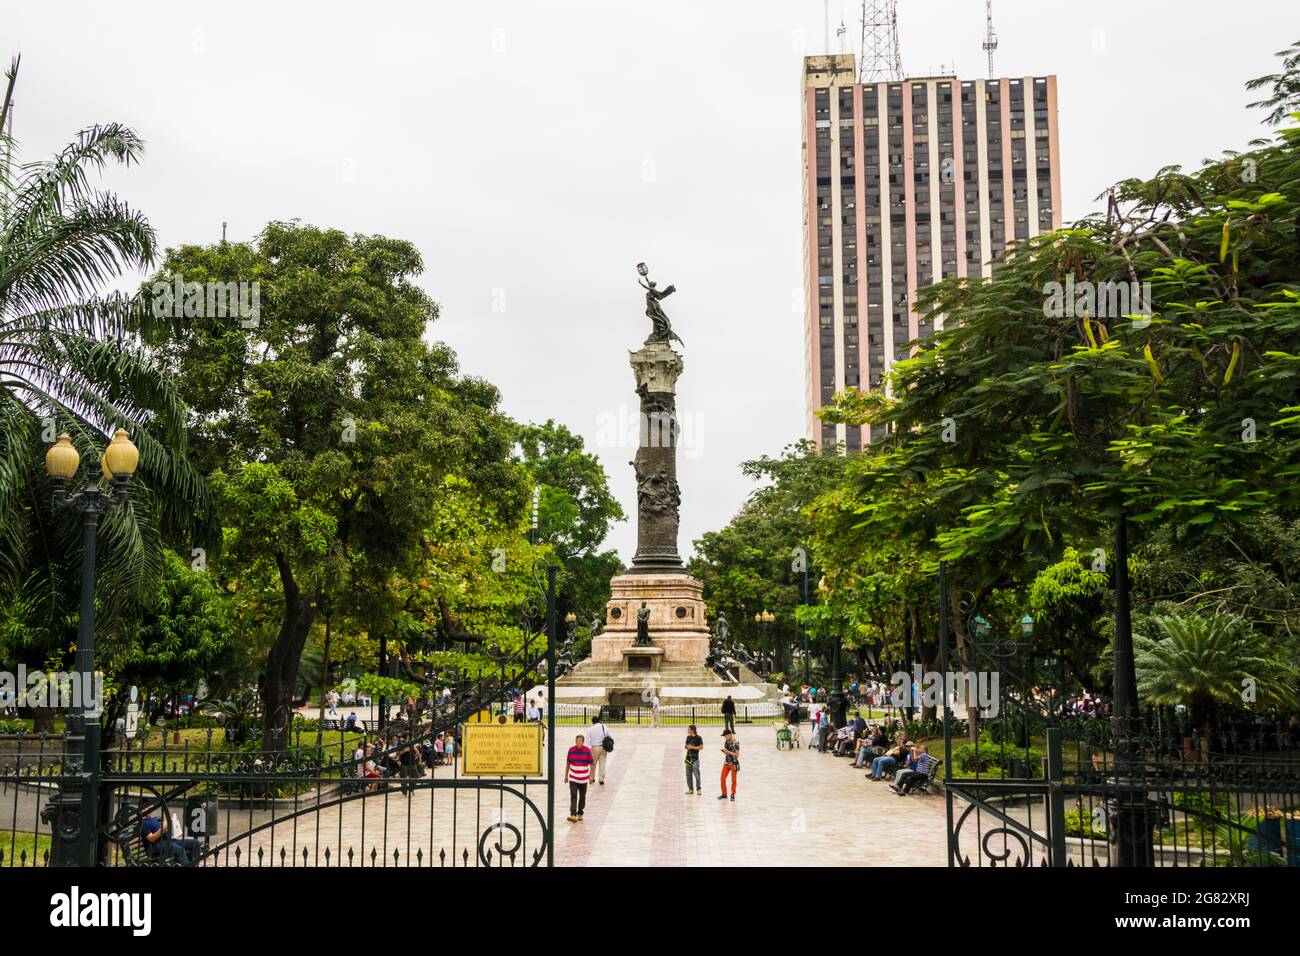 Plaza Centenario de Guayaquil Stock Photo